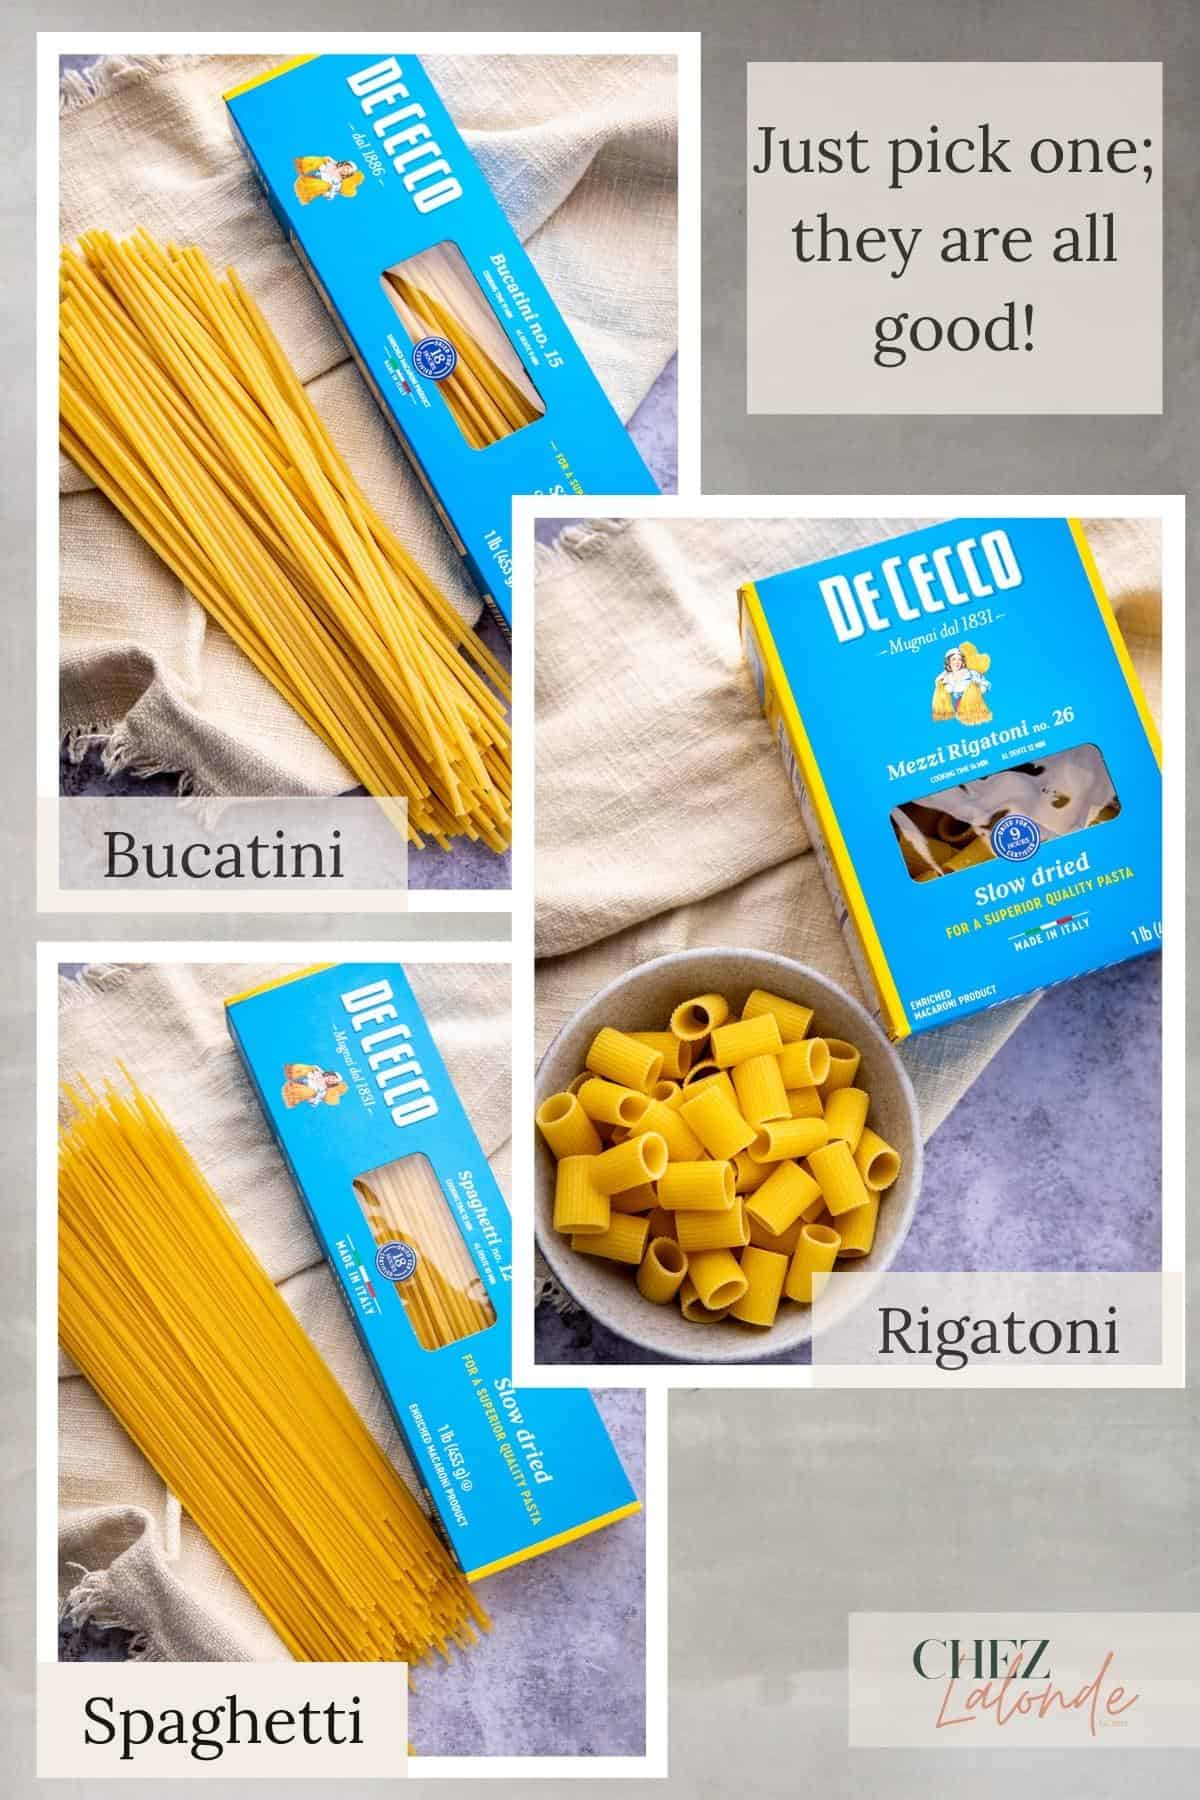 Here are Bucatini, Spaghetti, and Rigatoni pasta . 